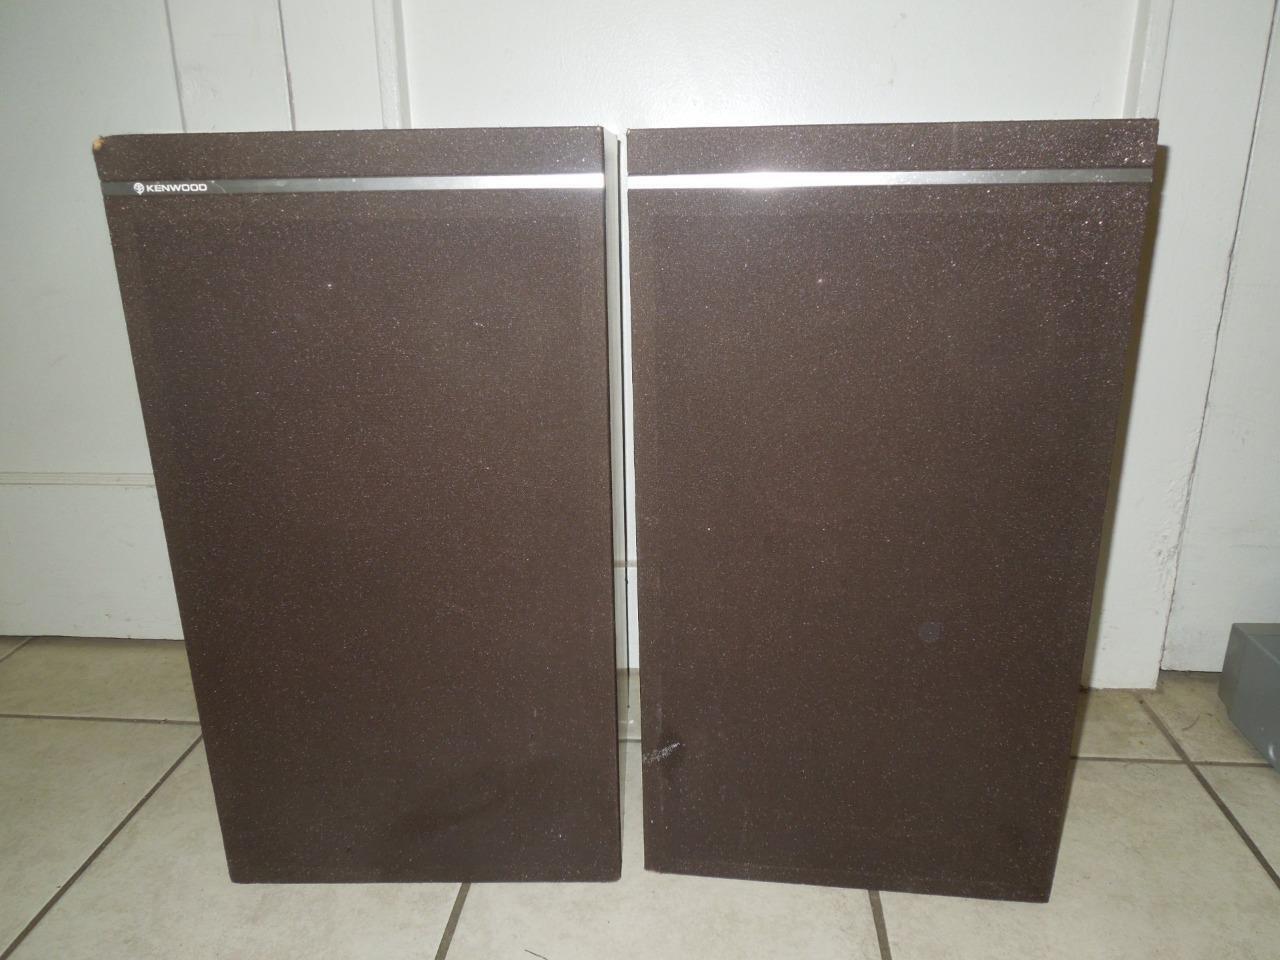 Pair of Vintage Kenwood LS-550 Loudspeakers / Speakers